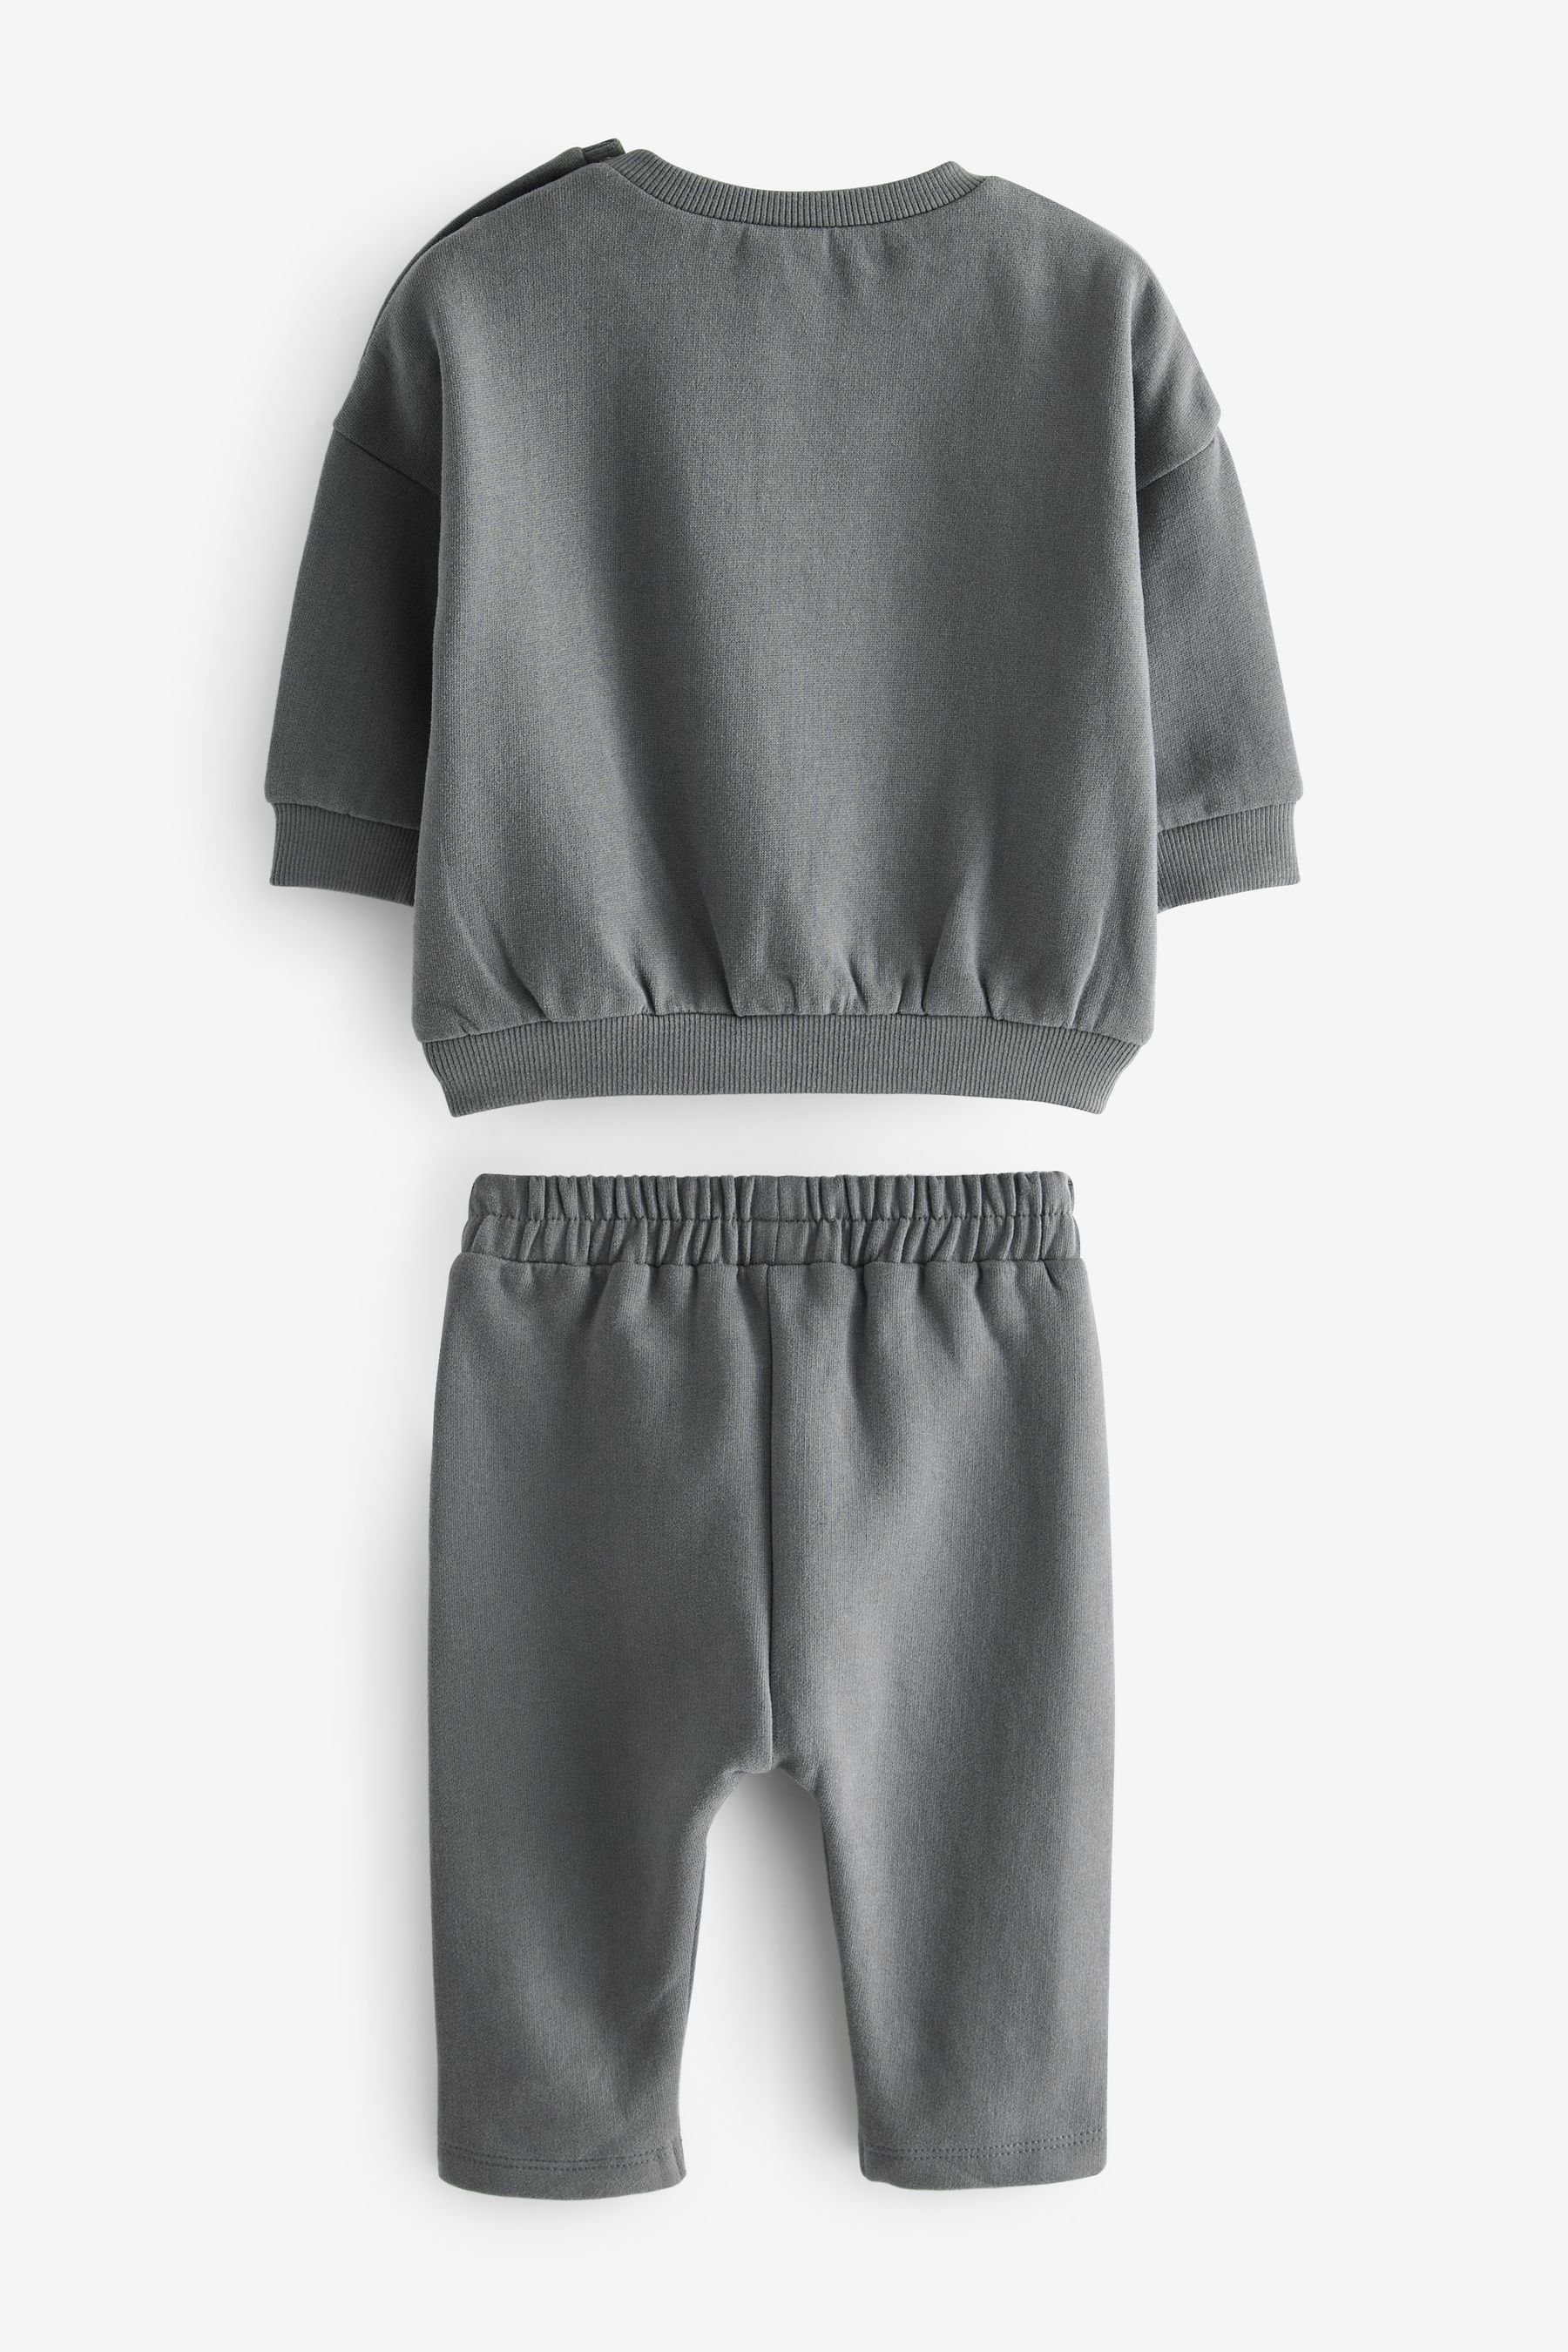 (2-tlg) 2-teiliges Jogginghose Baby-Set Sweatshirt Charcoal Man Next mit Little Sweatanzug Grey und